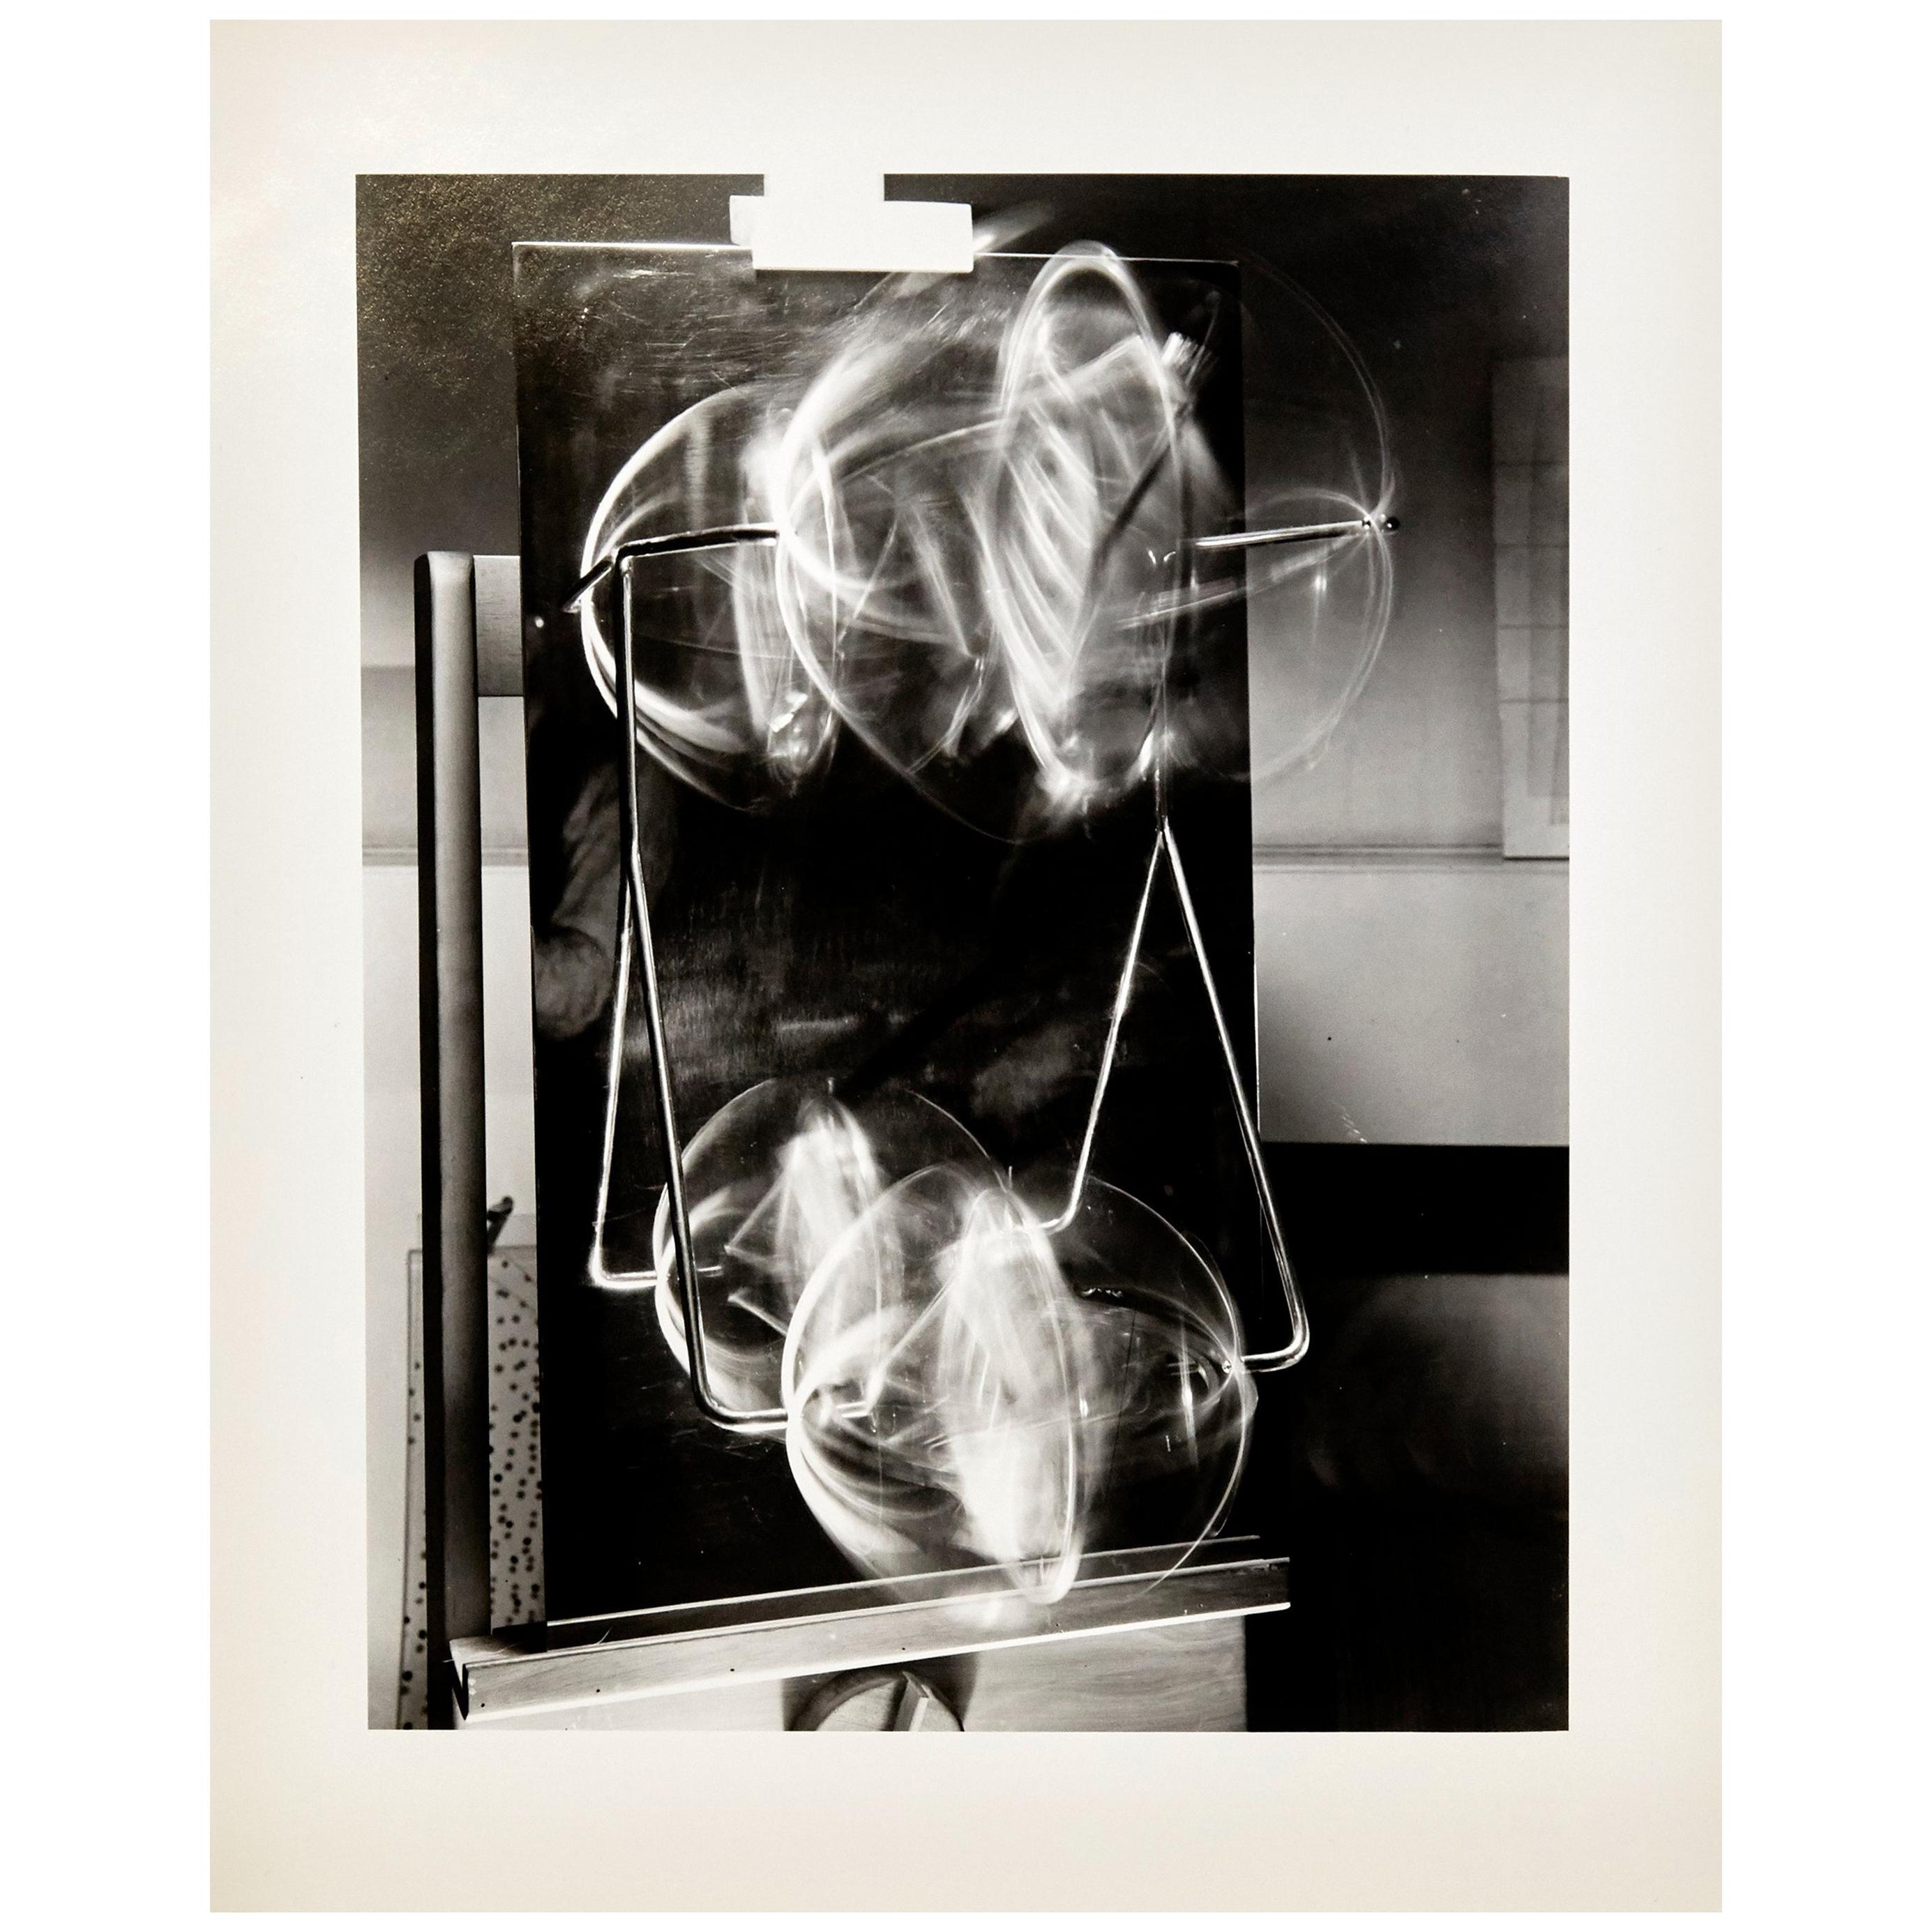 László Moholy-Nagy "Licht-Raum Modulationen" Photography 2/6